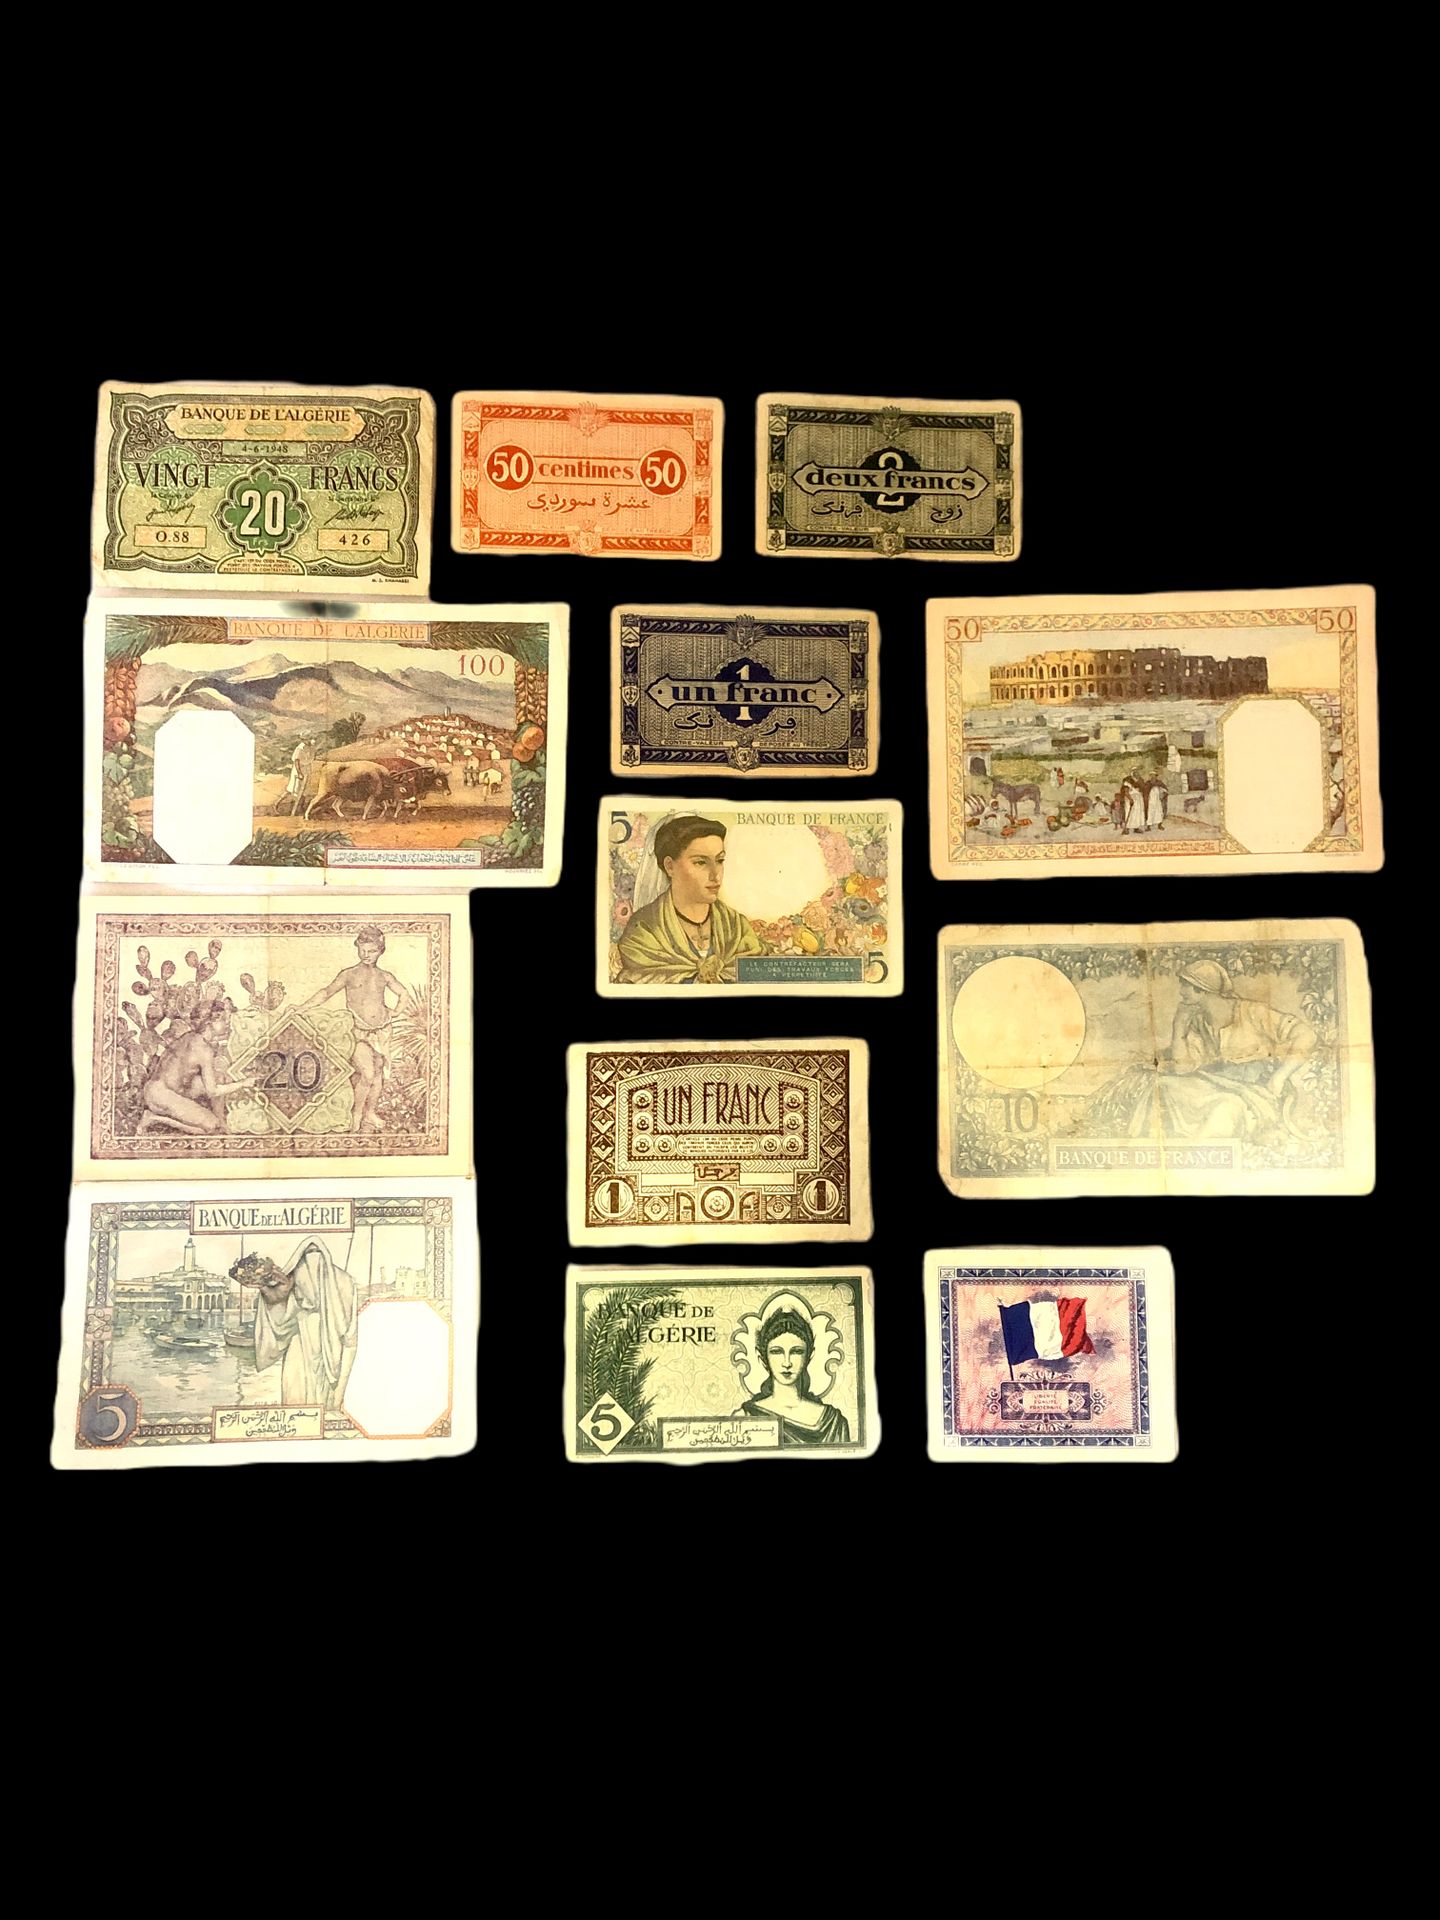 Null Folge von 24 Banknoten bestehend aus :

- X8 Banque de l'algérie 5 francs 1&hellip;